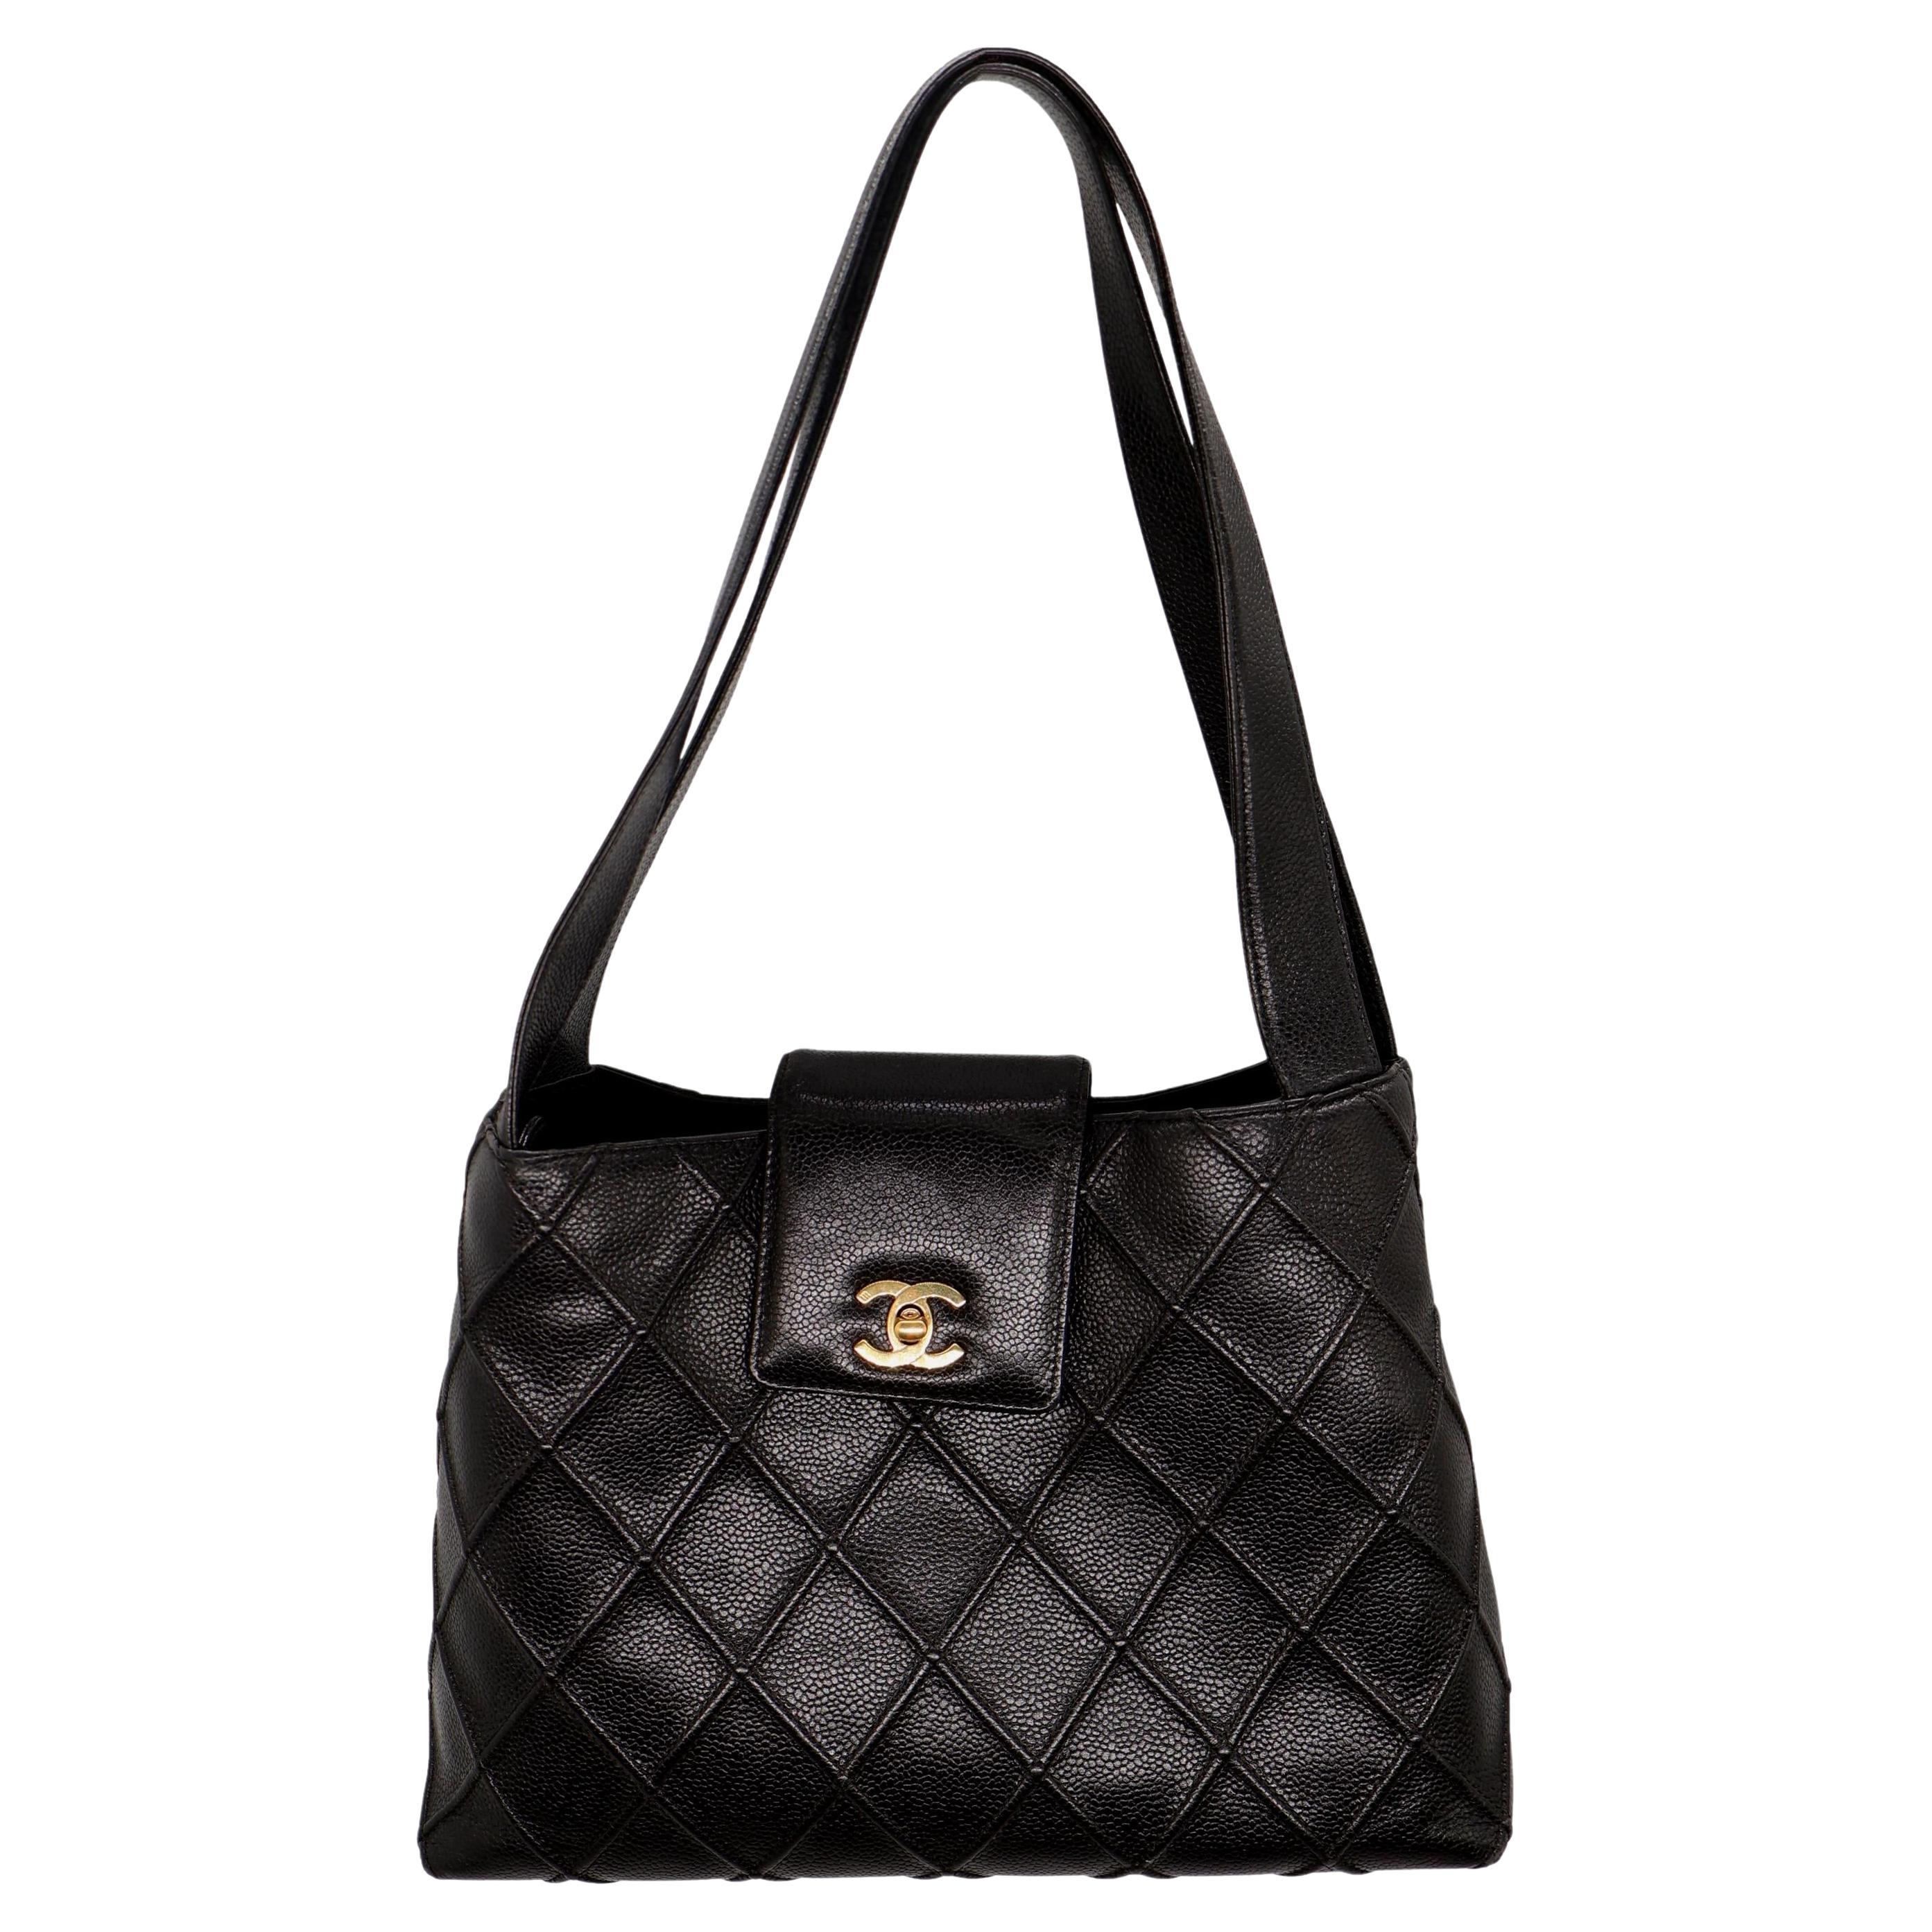 Chanel Vintage Black Reverse Quilted Caviar Leather Shoulder Bag, 1996 - 1997. For Sale